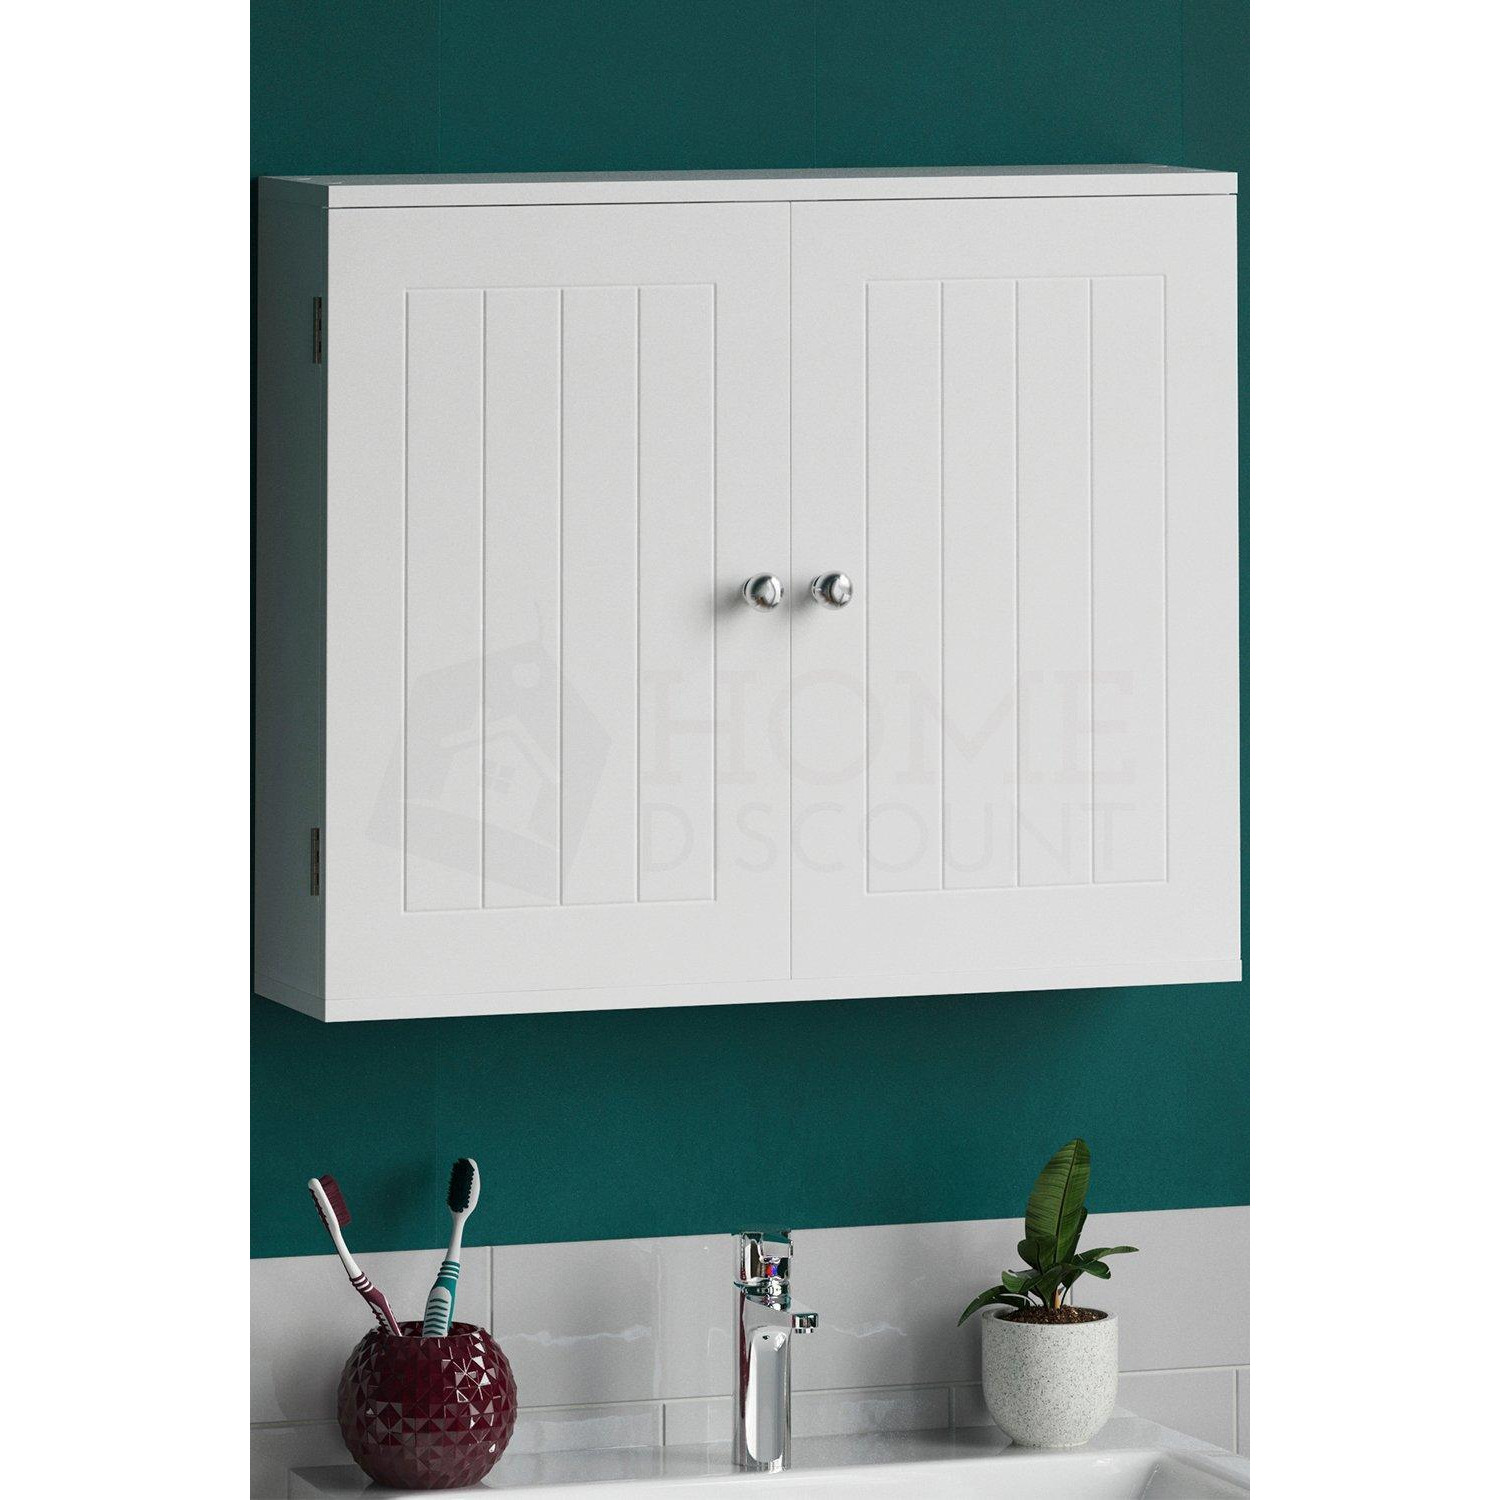 Bath Vida Priano 2 Door Wall Cabinet With Shelves Bathroom Storage - image 1